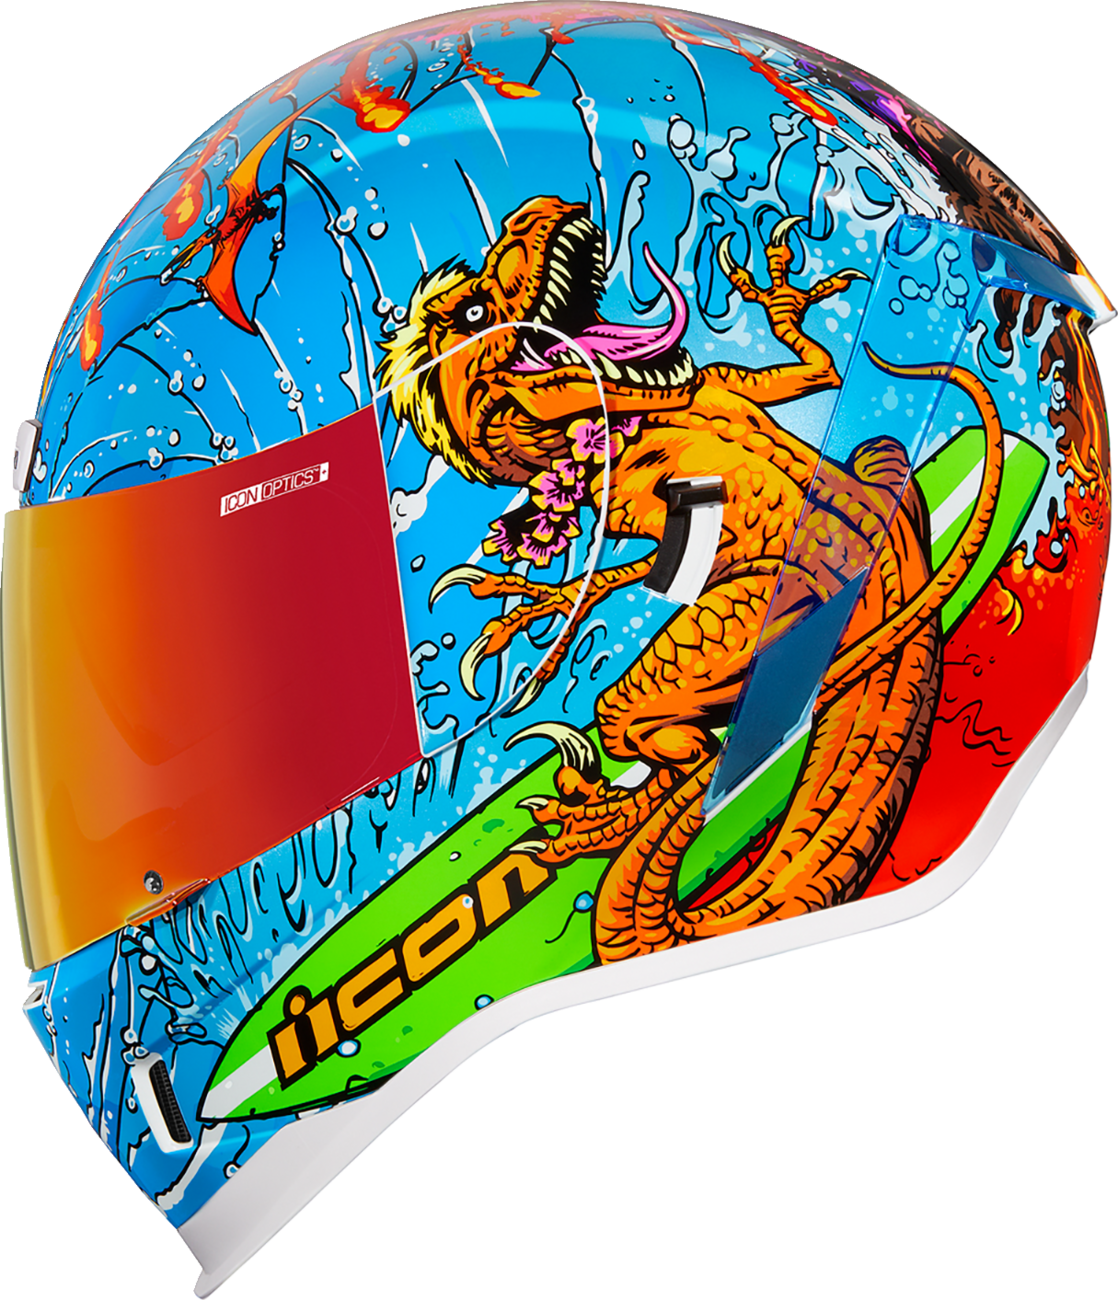 ICON Airform™ Helmet - Dino Fury - XS 0101-14789